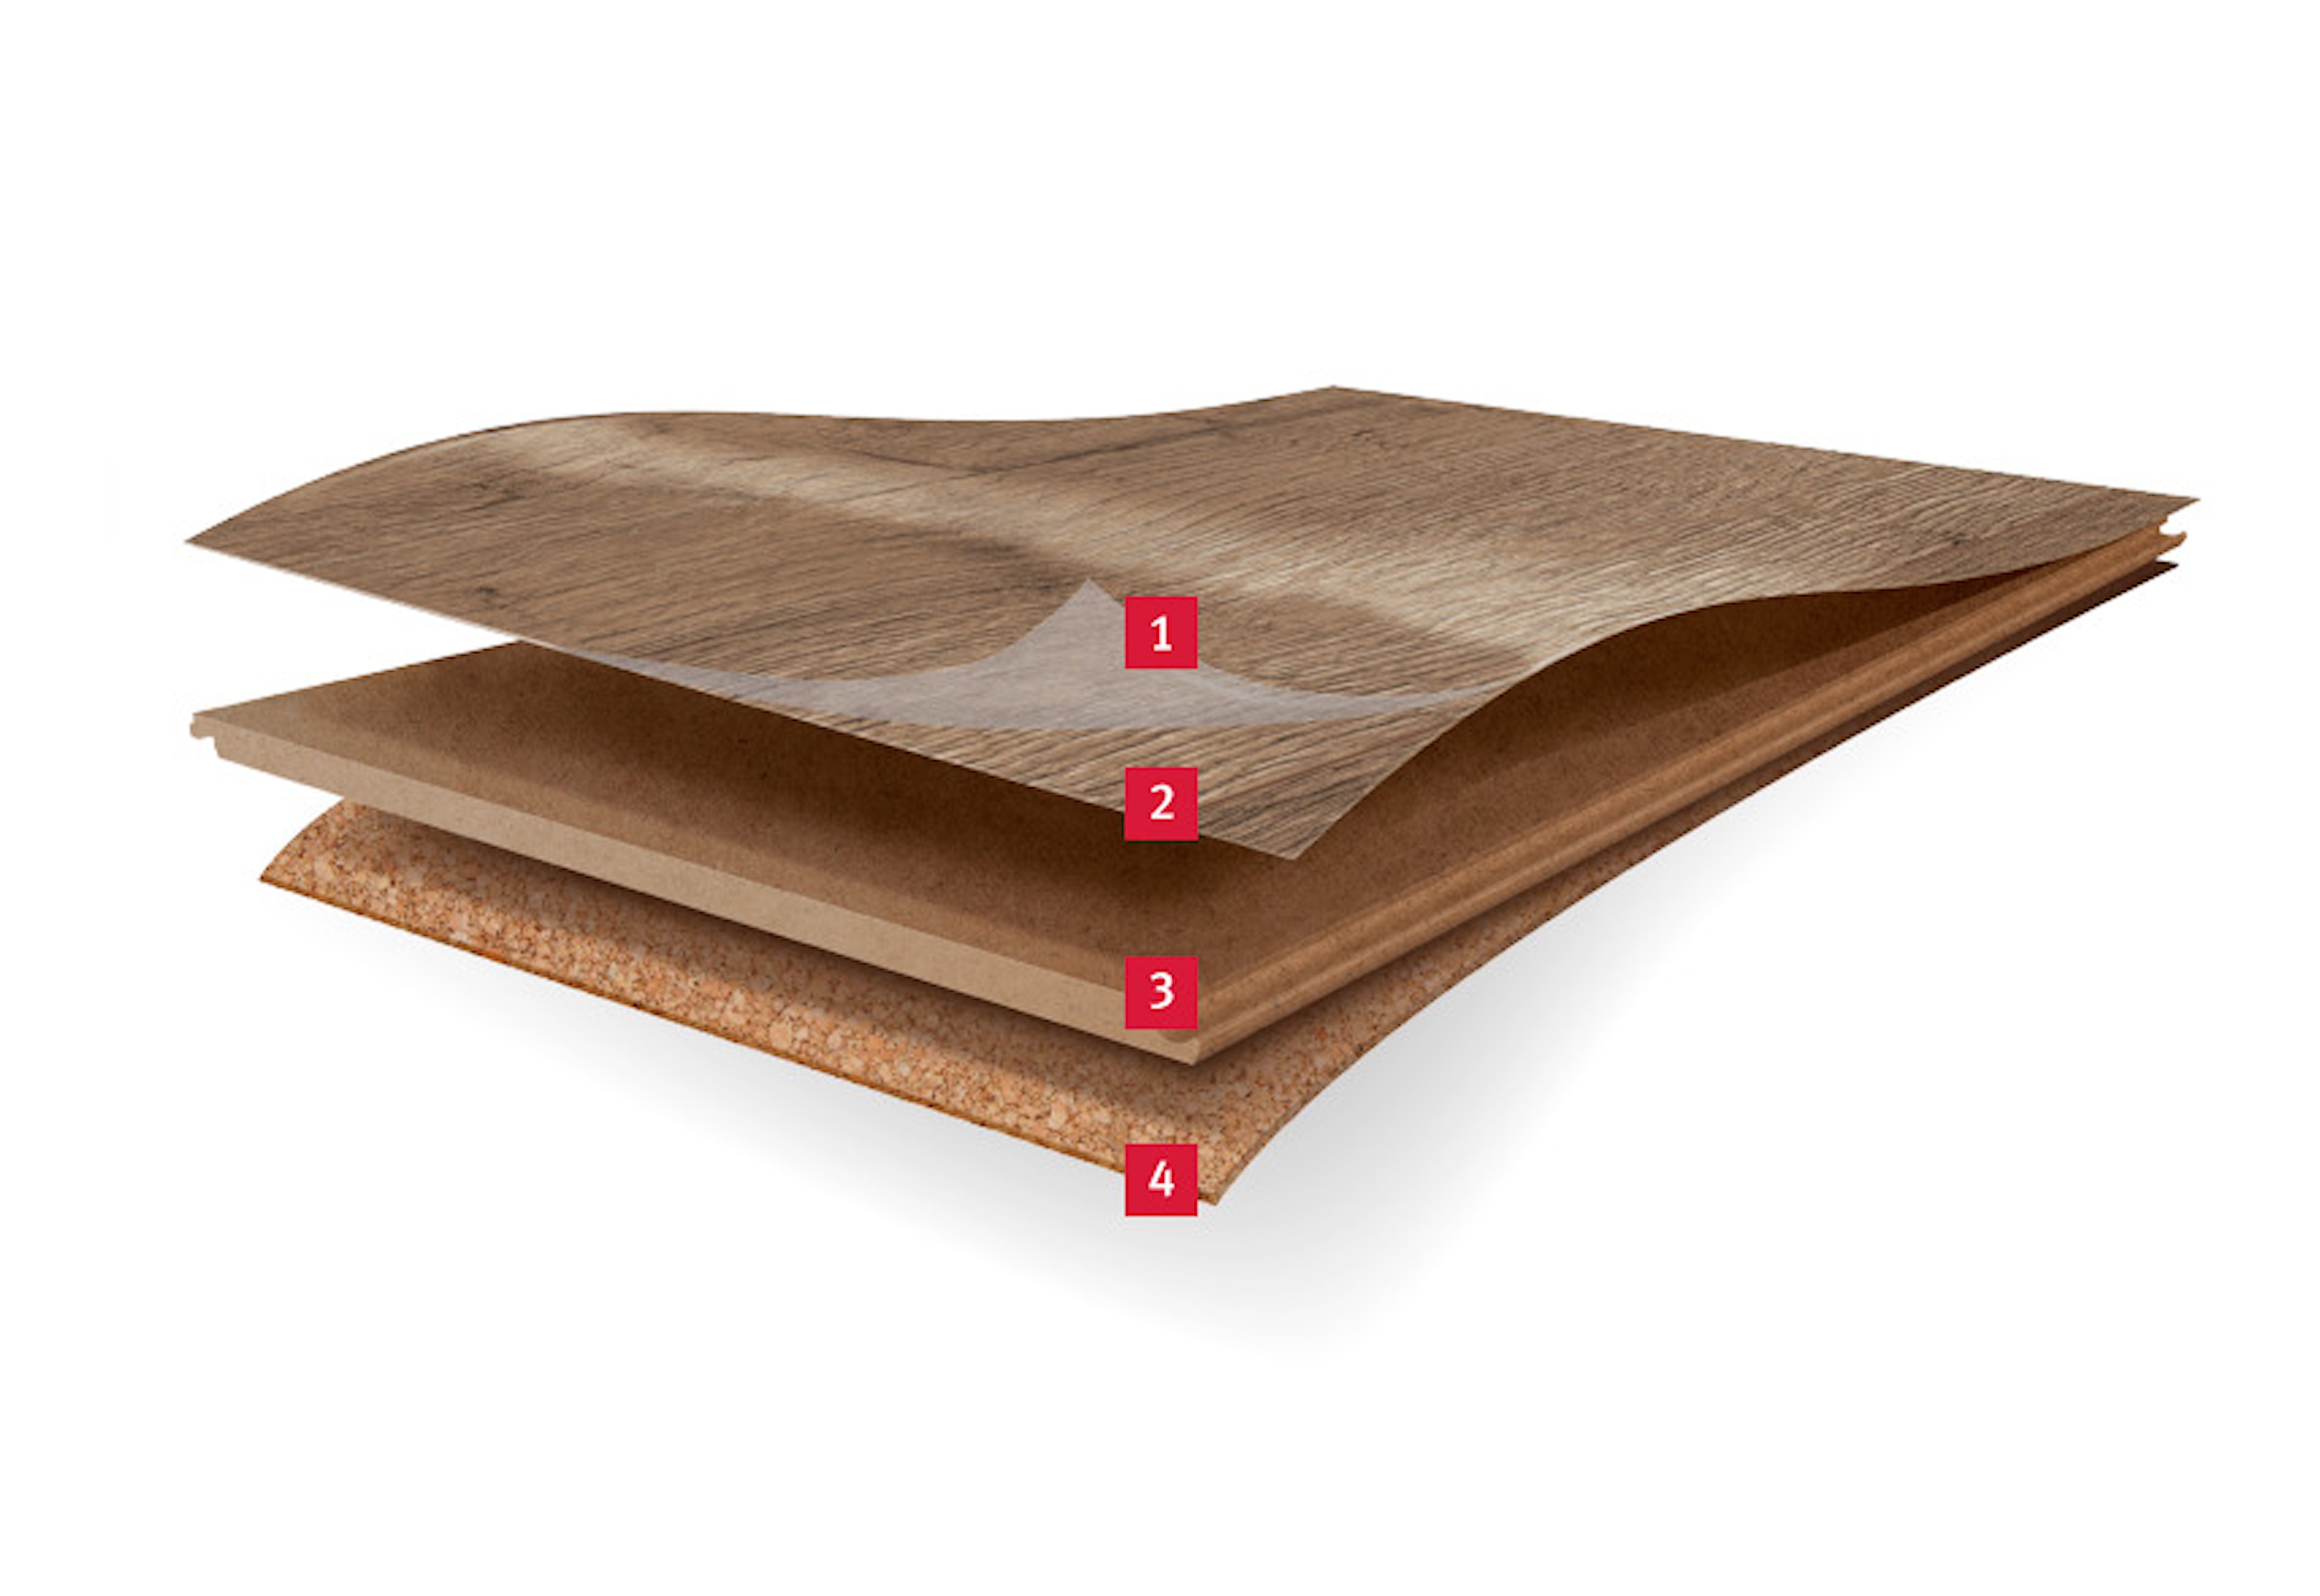 EGGER Design GreenTec: Robusto, resistente à humidade, redução do nível do som... e feito a base de madeira!